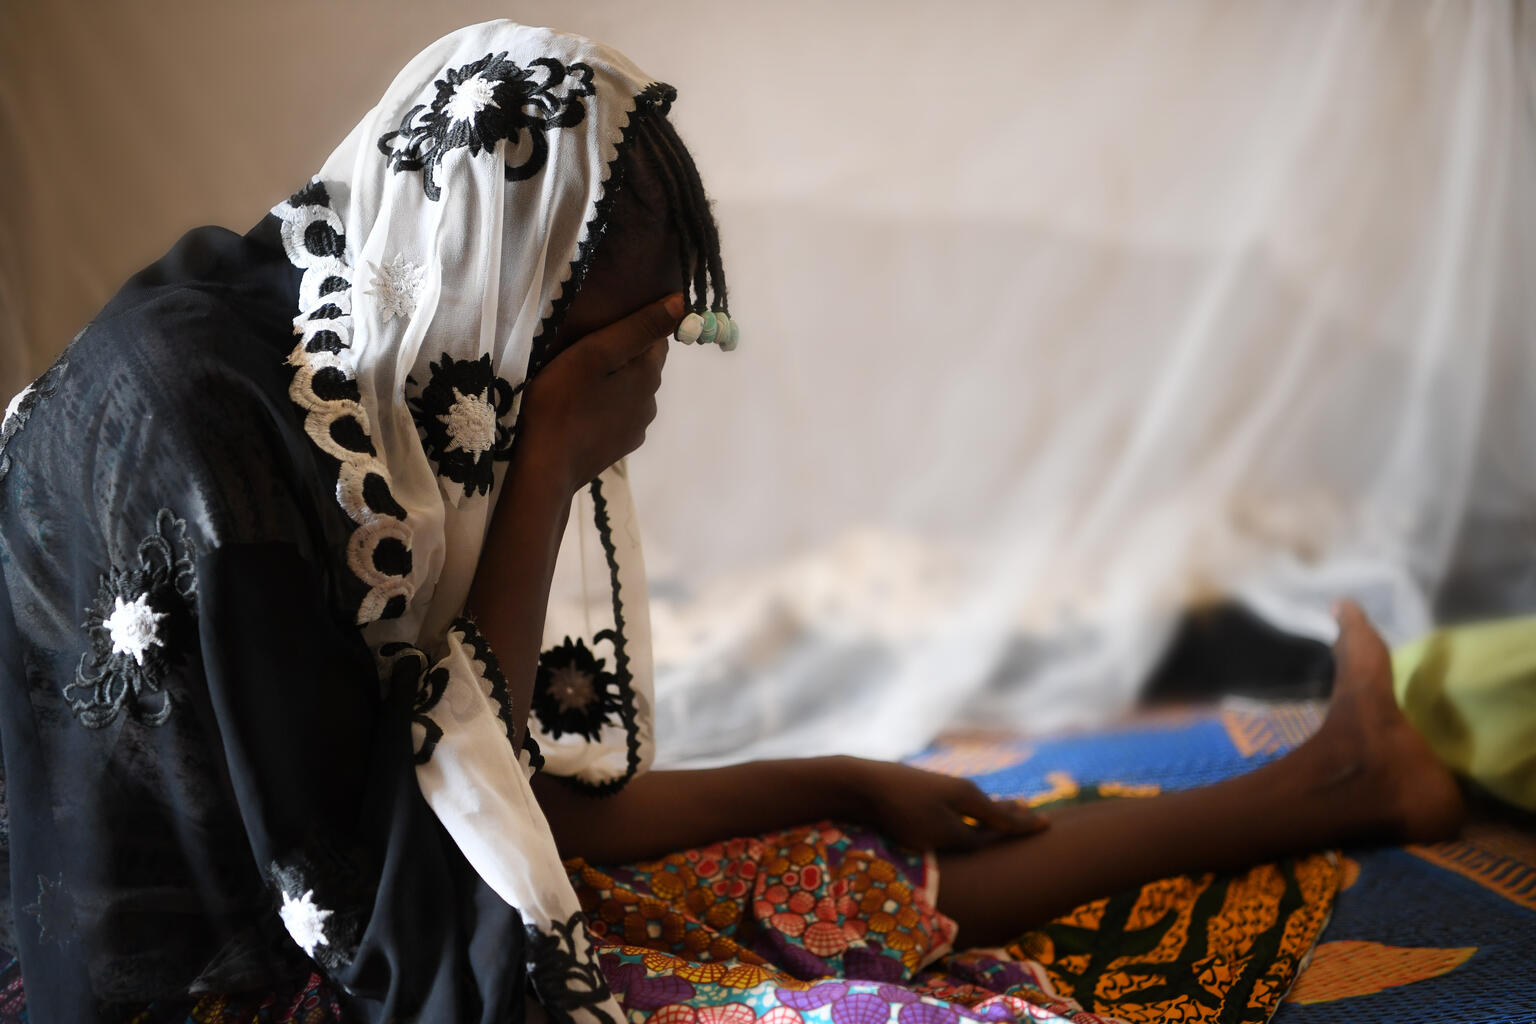 ユニセフは女の子と女性の人権を侵害する女性器切除（FGM）を強く非難し、これをなくそうとする地元当局の活動を支援している。ブルキナファソでもFGM、児童婚、子どもへの暴力といった慣行に終止符を打つと公に宣言した村々が1000を超えている。（ブルキナファソ、2022年撮影）